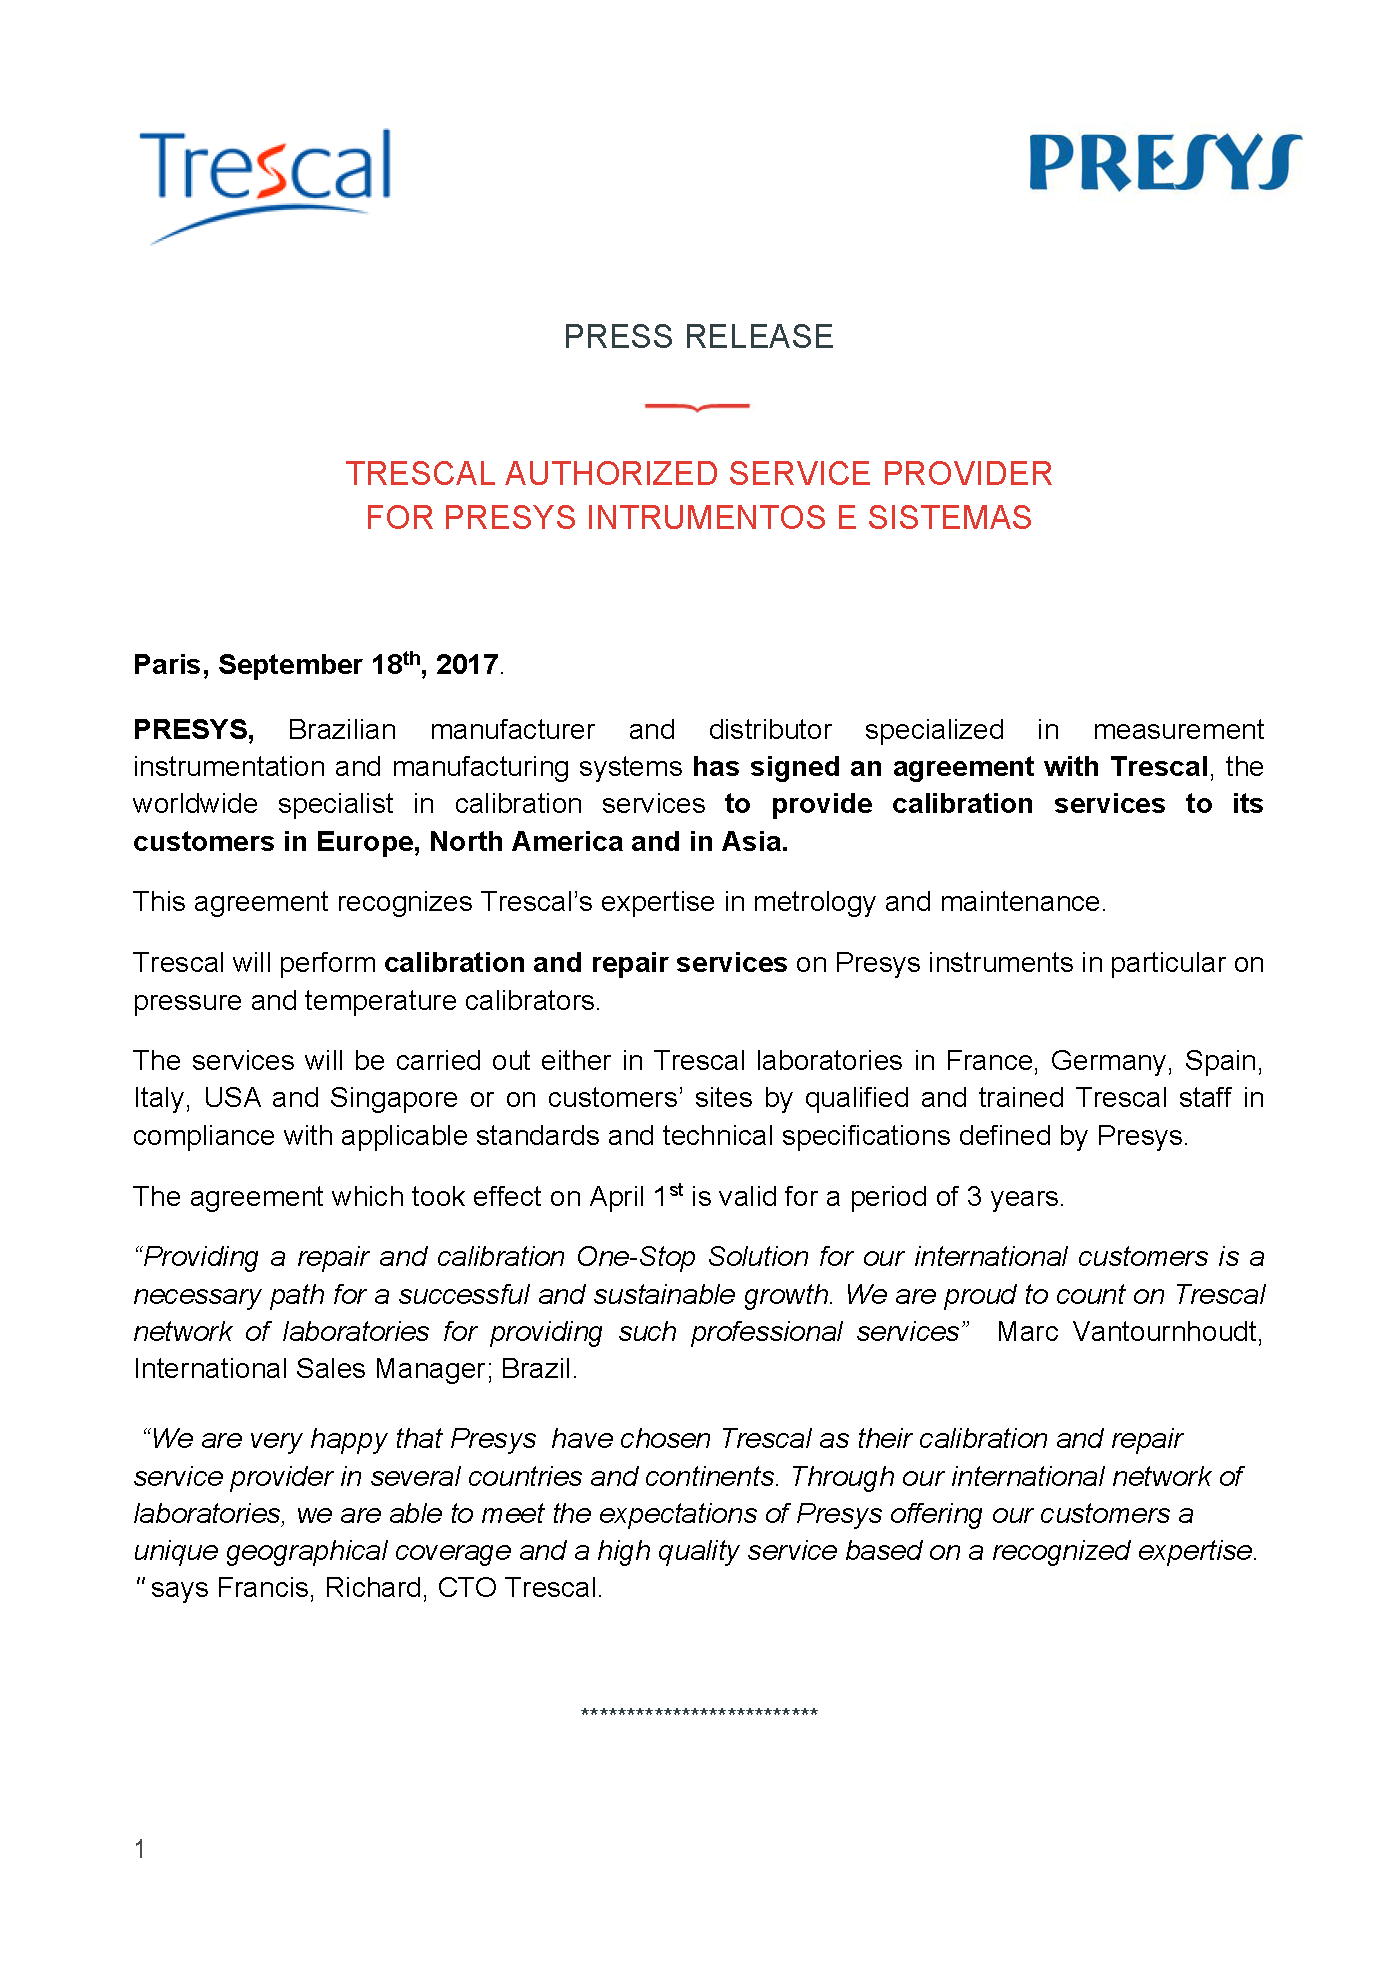 Trescal Authorized Service Provider for Presys Instrumentos e Sistemas